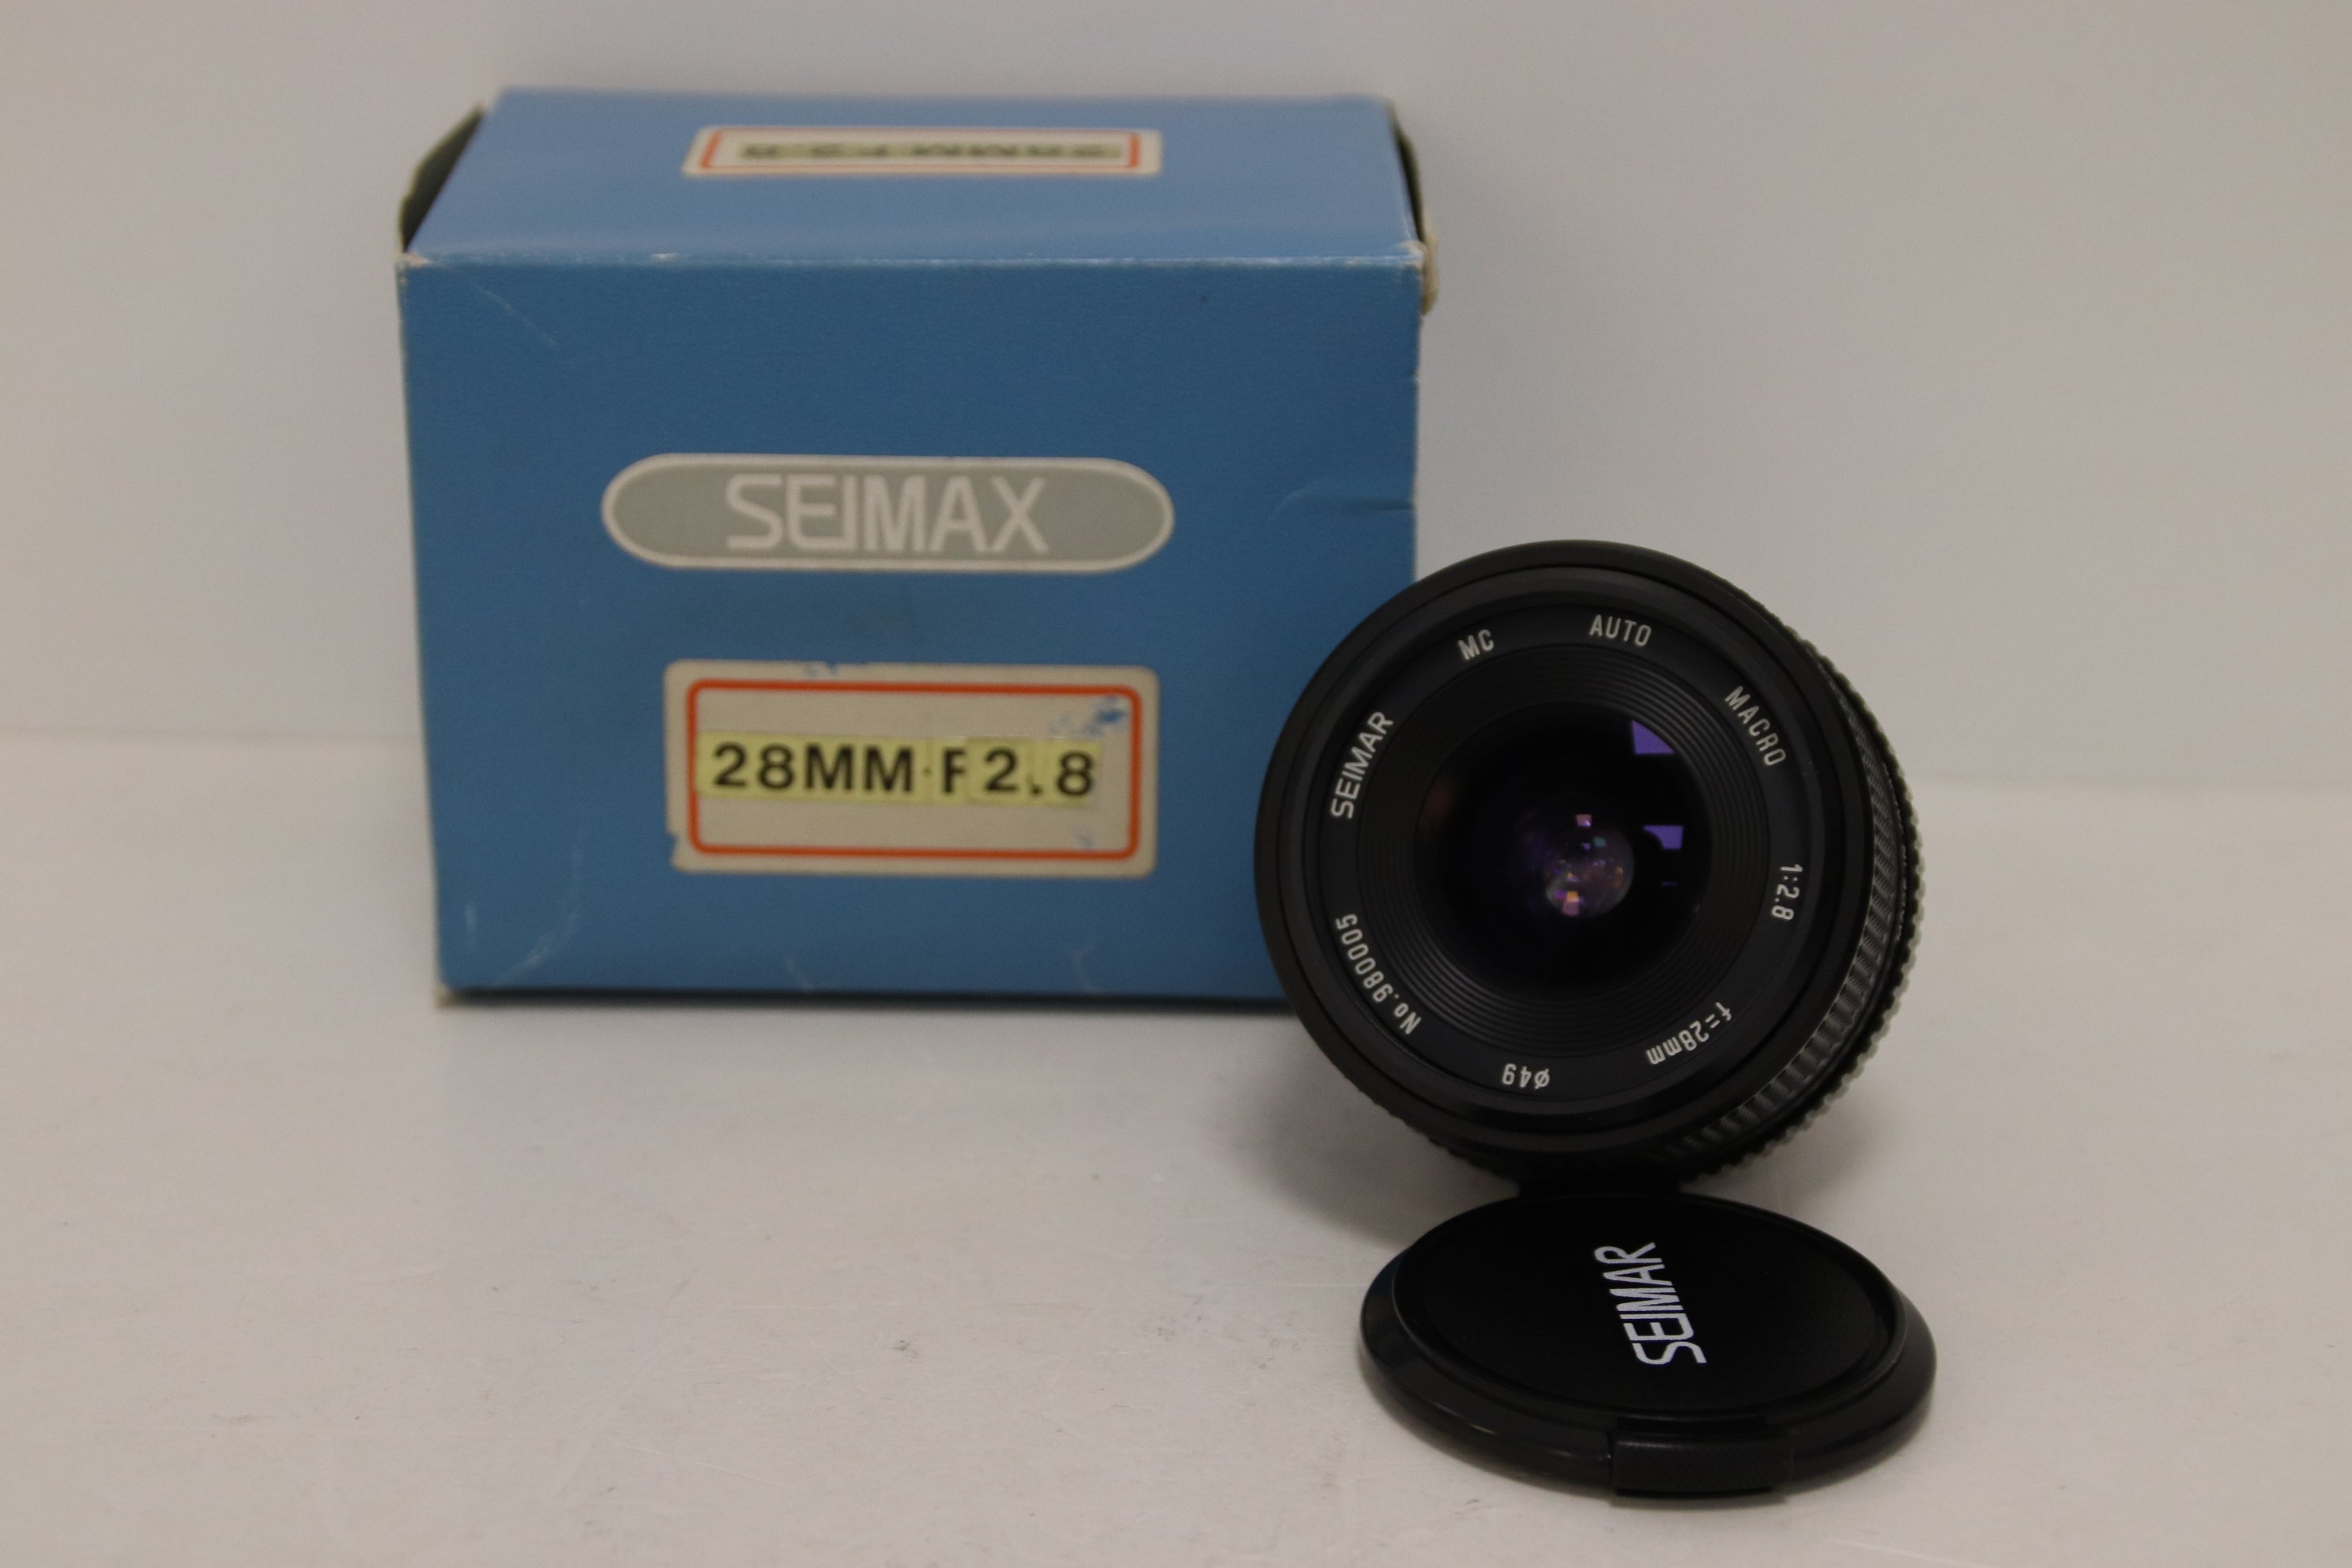 Seimar 28 mm f2.8  for Pentax - Gar. 1 anno